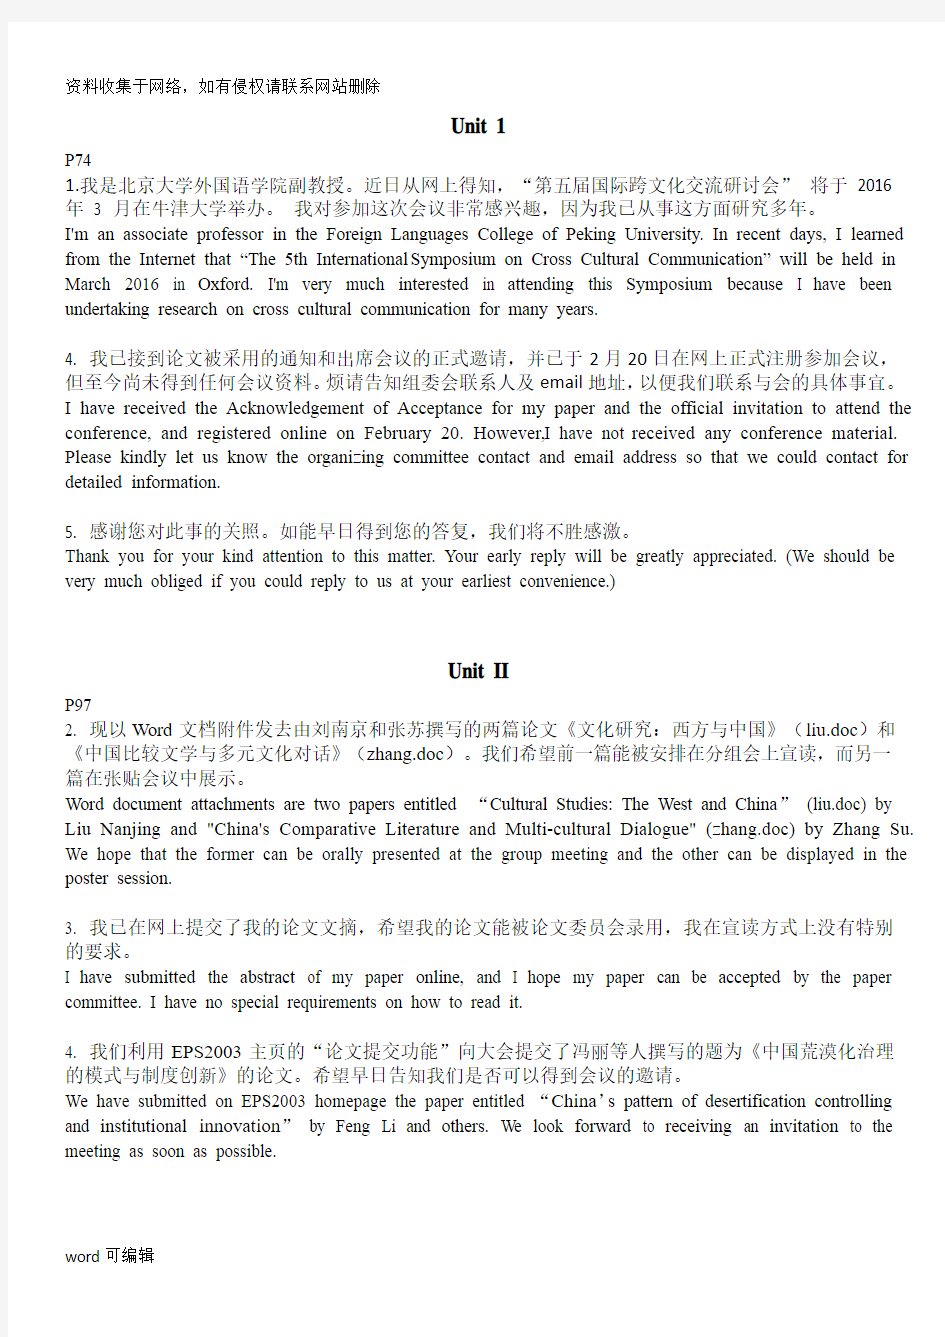 中南大学研究生英语E-book1考试翻译重点及答案(2018)复习过程